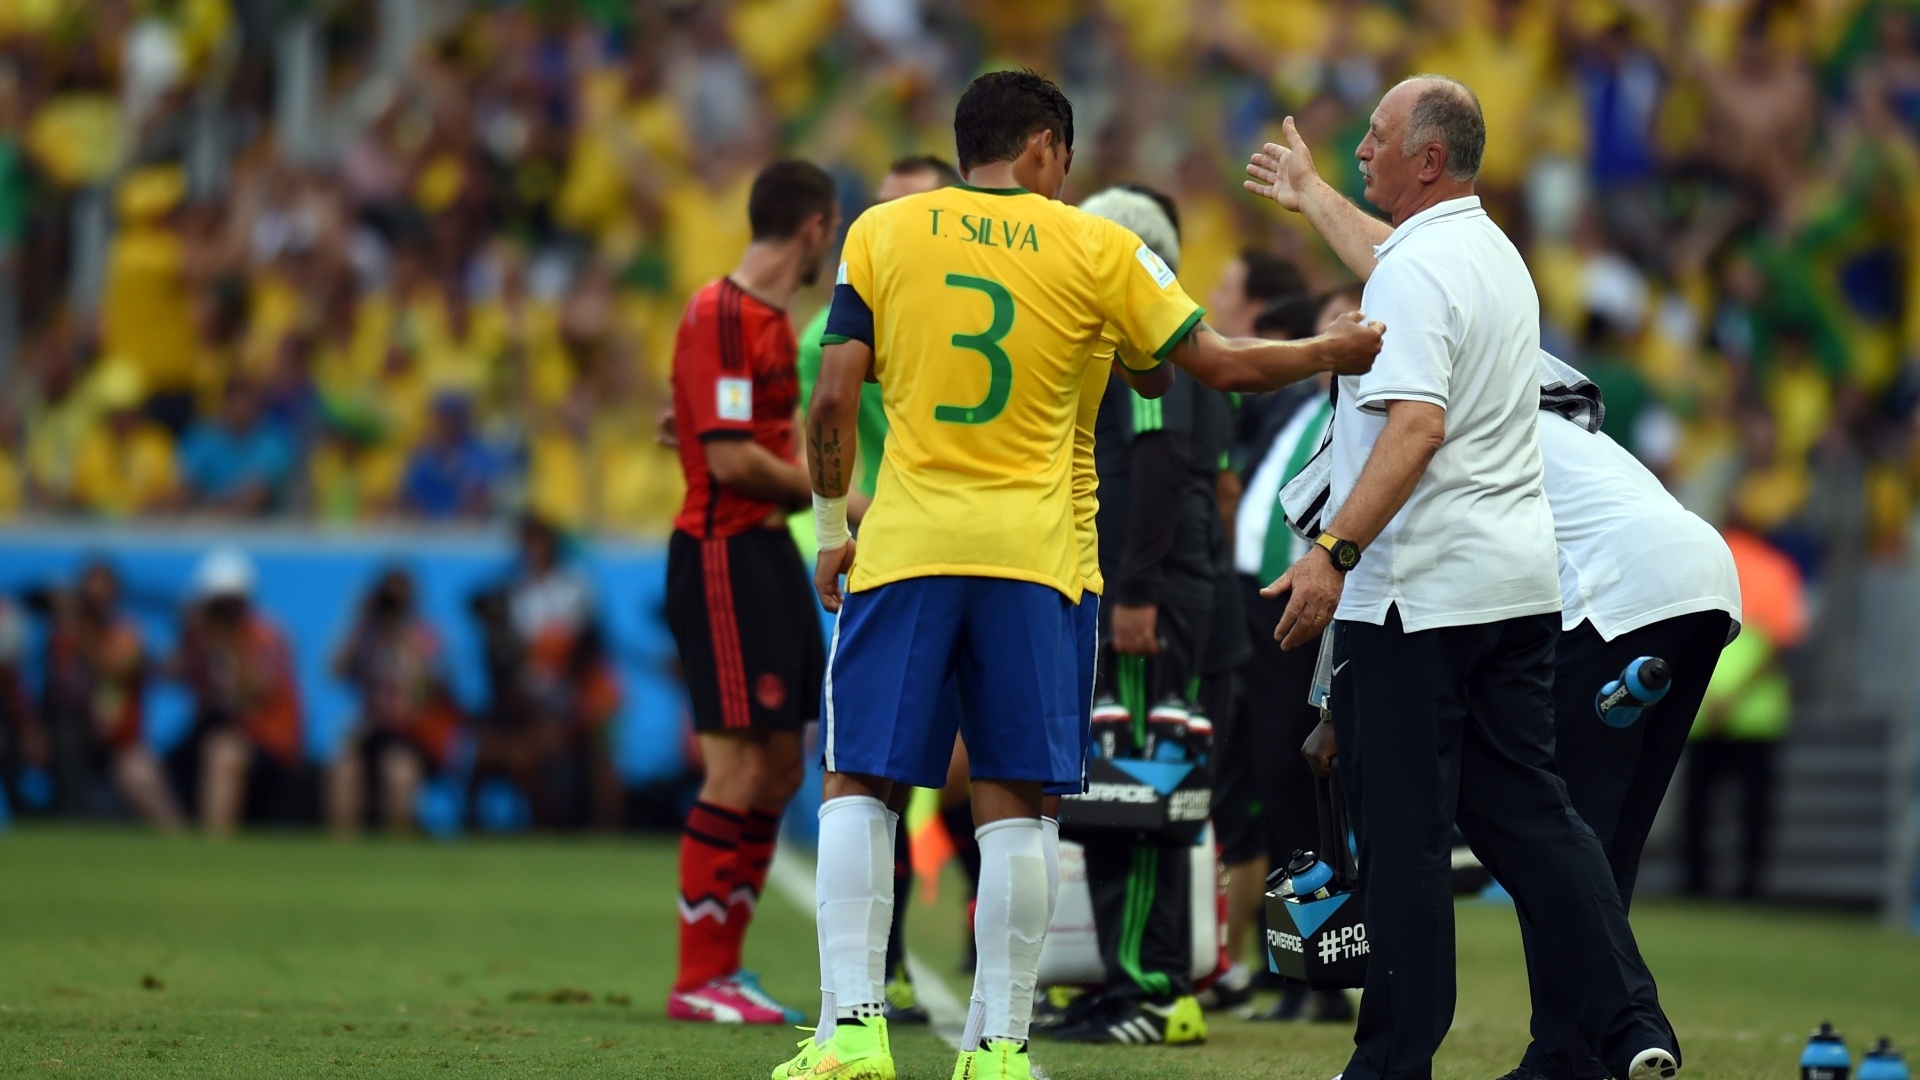 17.jun.2014 - Luiz Felipe Scolari orienta a seleção brasileira no primeiro tempo da partida contra o México, no Castelão